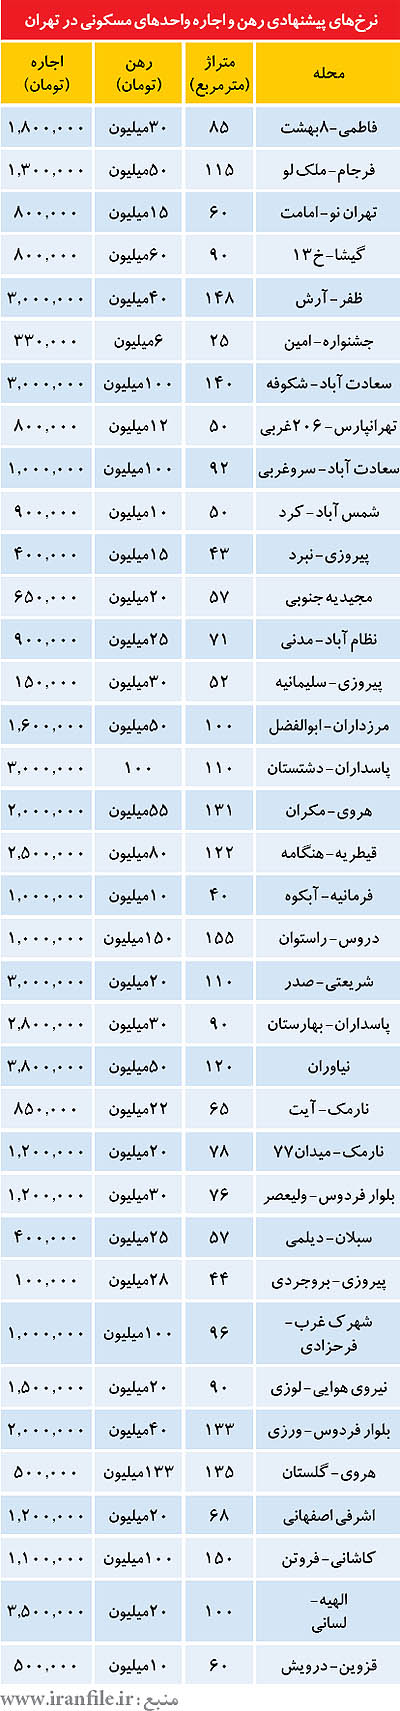 نرخ اجاره مسکن در مناطق مختلف تهران